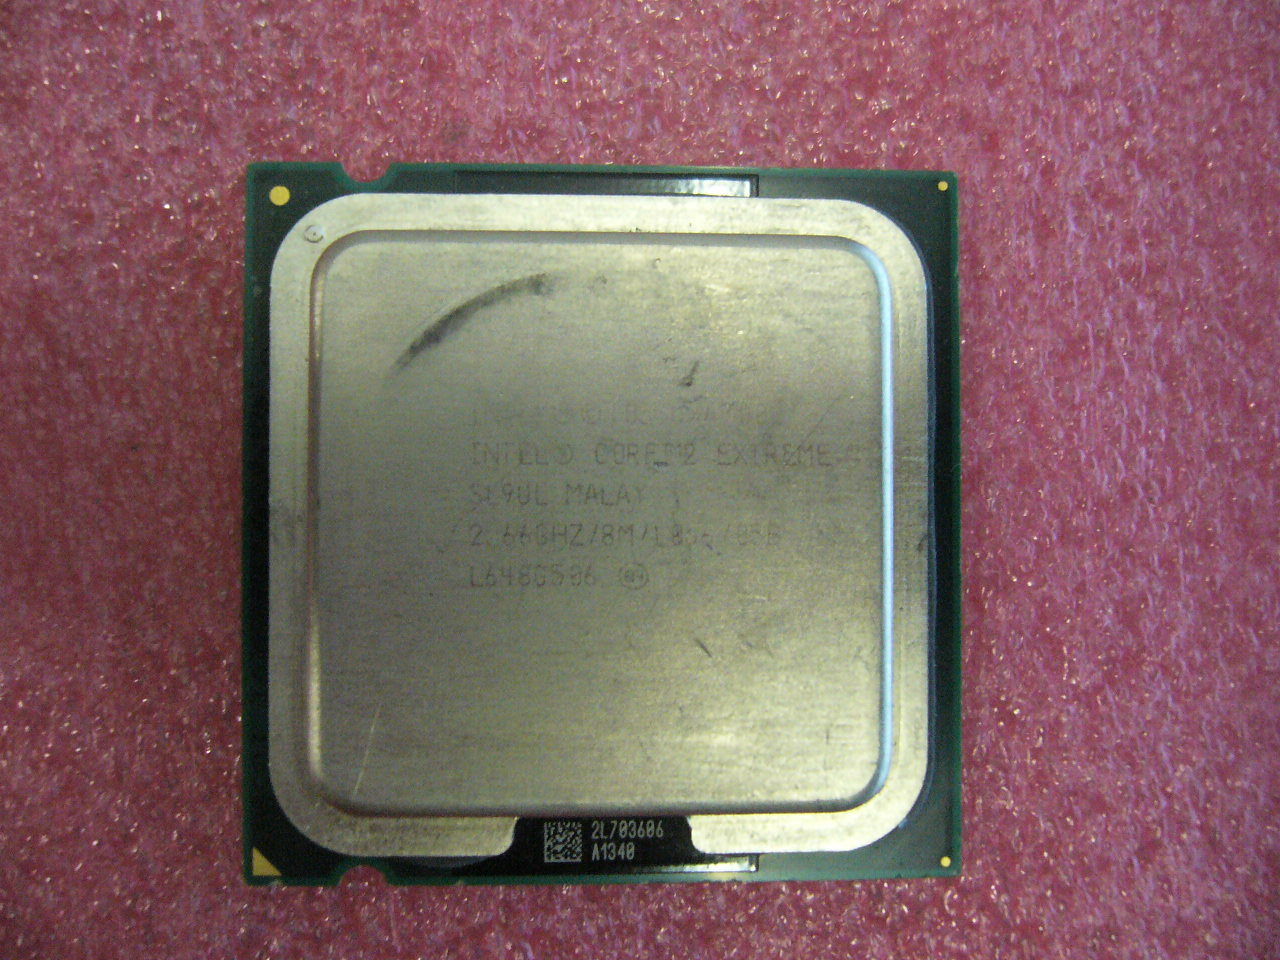 QTY 1x INTEL Core2 Extreme QX6700 CPU 2.66GHz/8MB/1066Mhz LGA775 SL9UL - zum Schließen ins Bild klicken